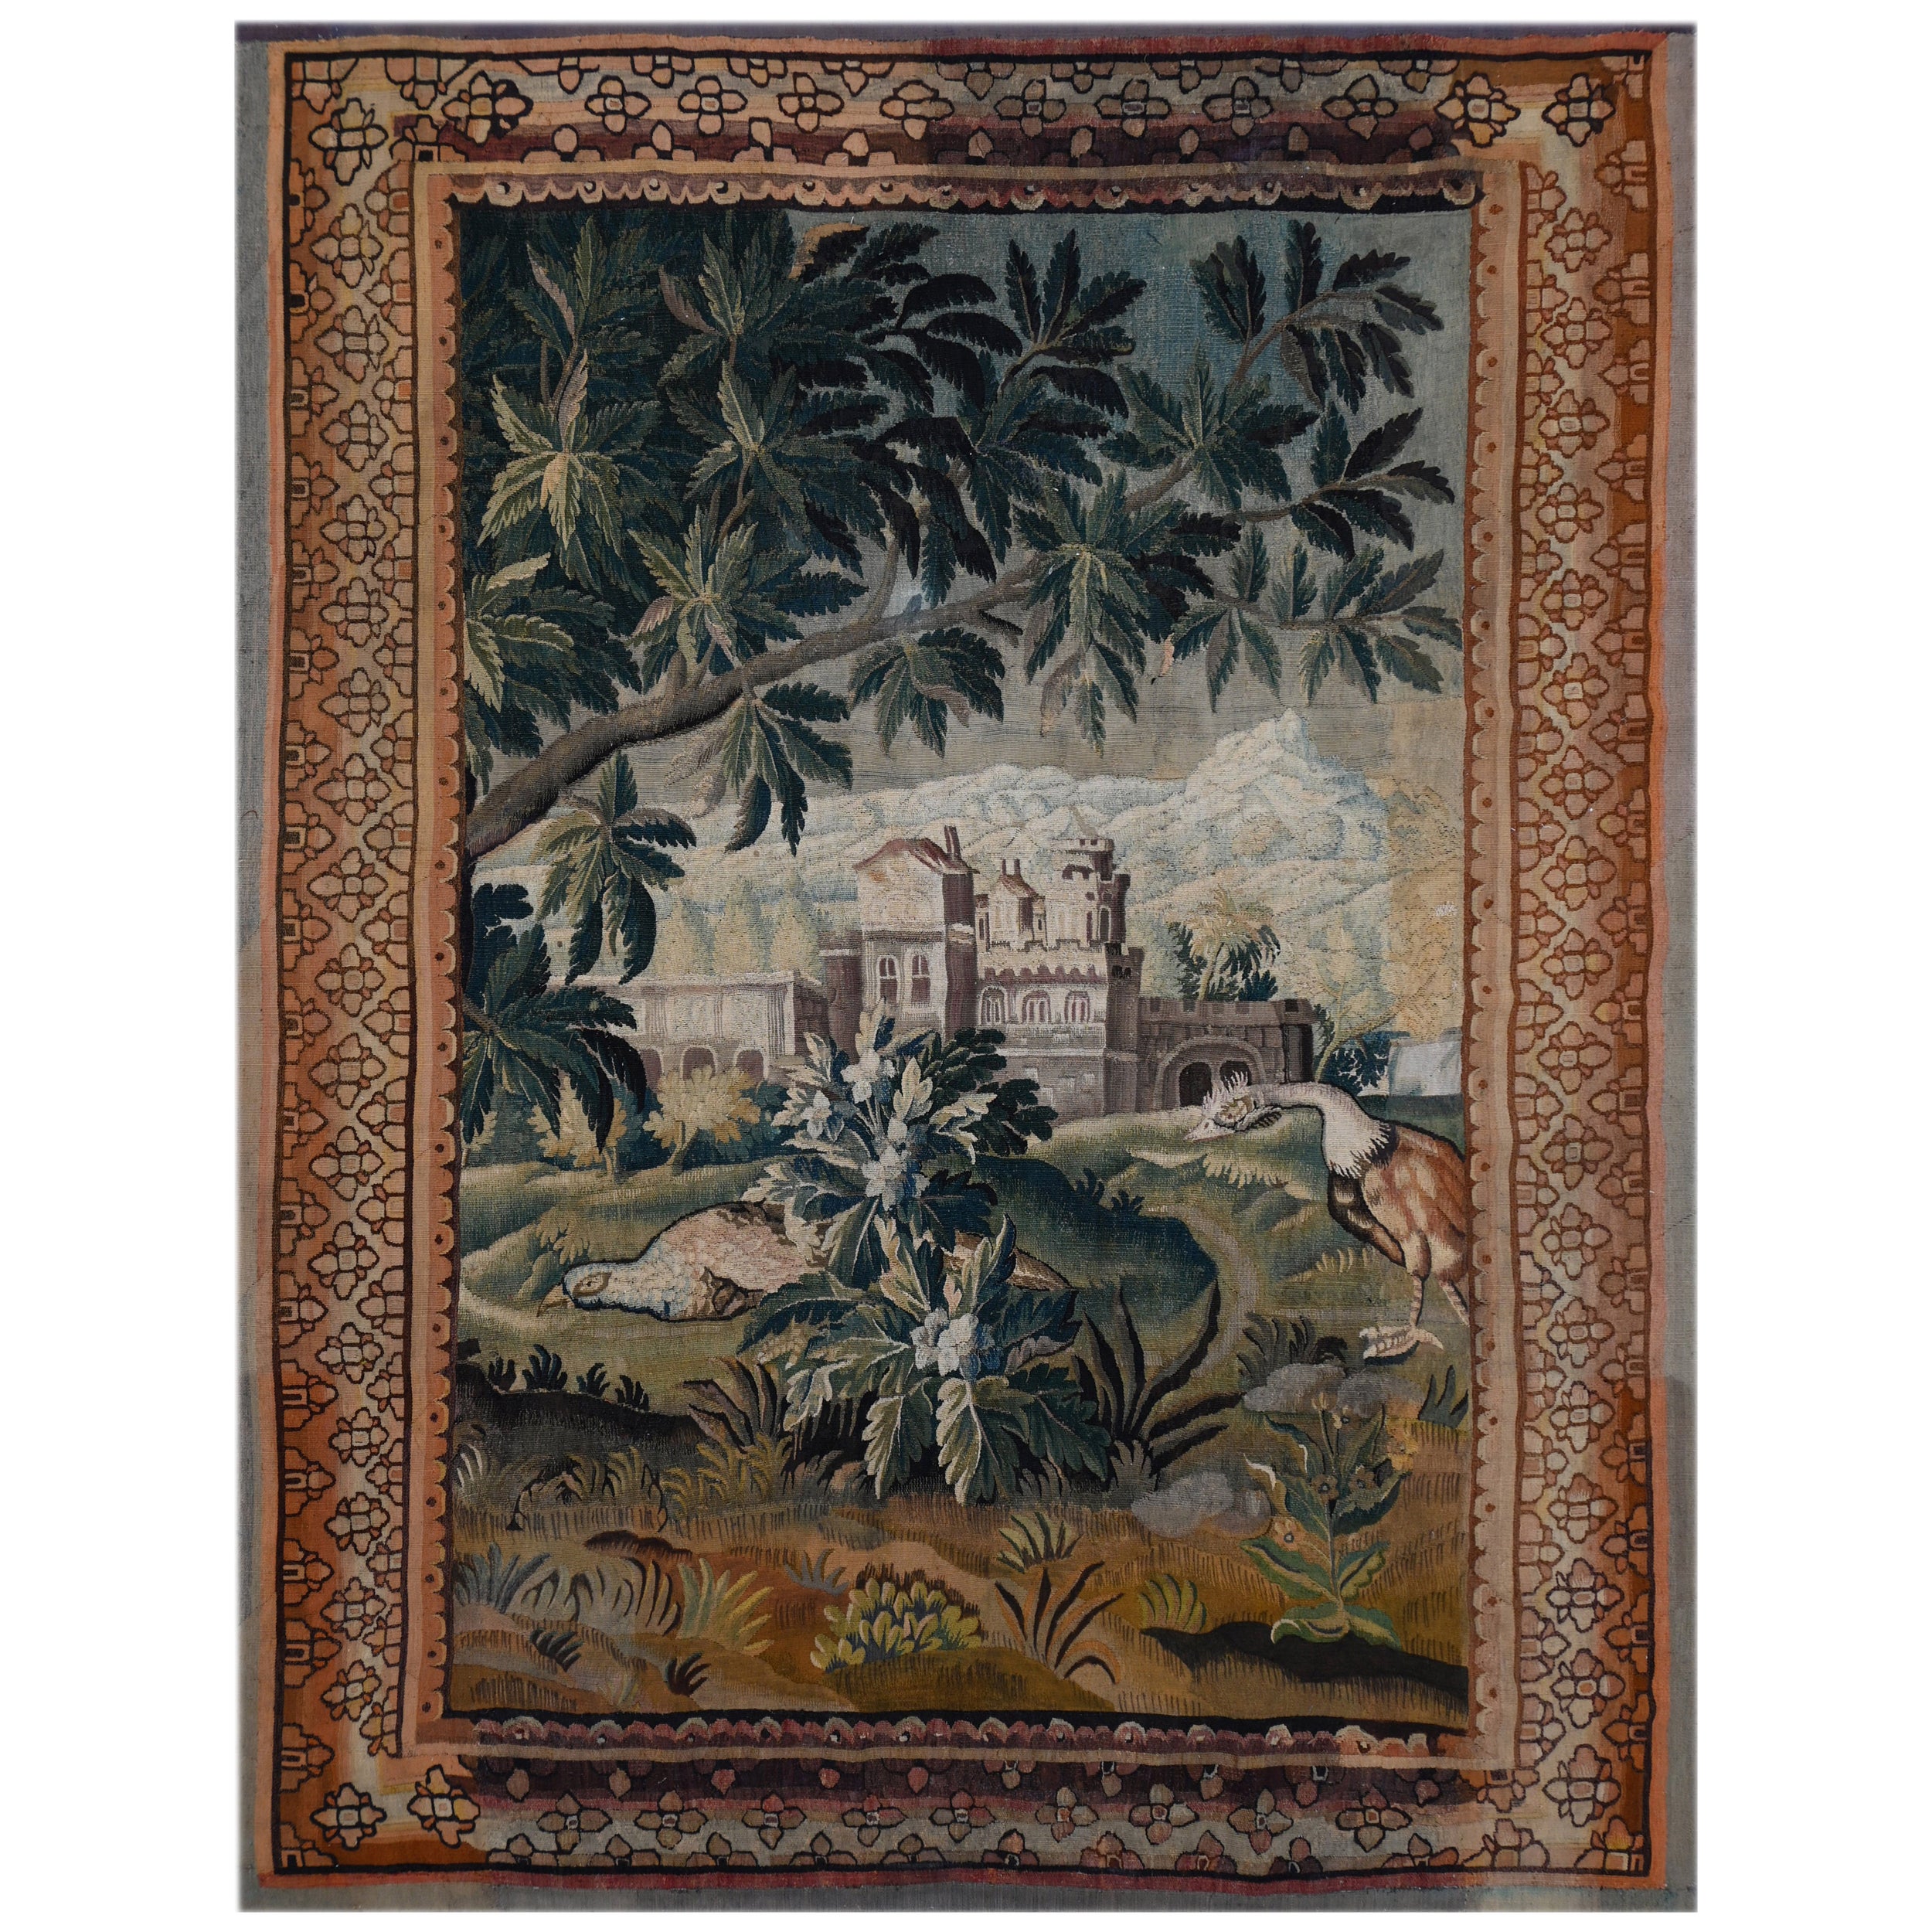 Französisch Greenery Wandteppich Aubusson 18. Jahrhundert - 2m67Hx1m97L - N° 1386